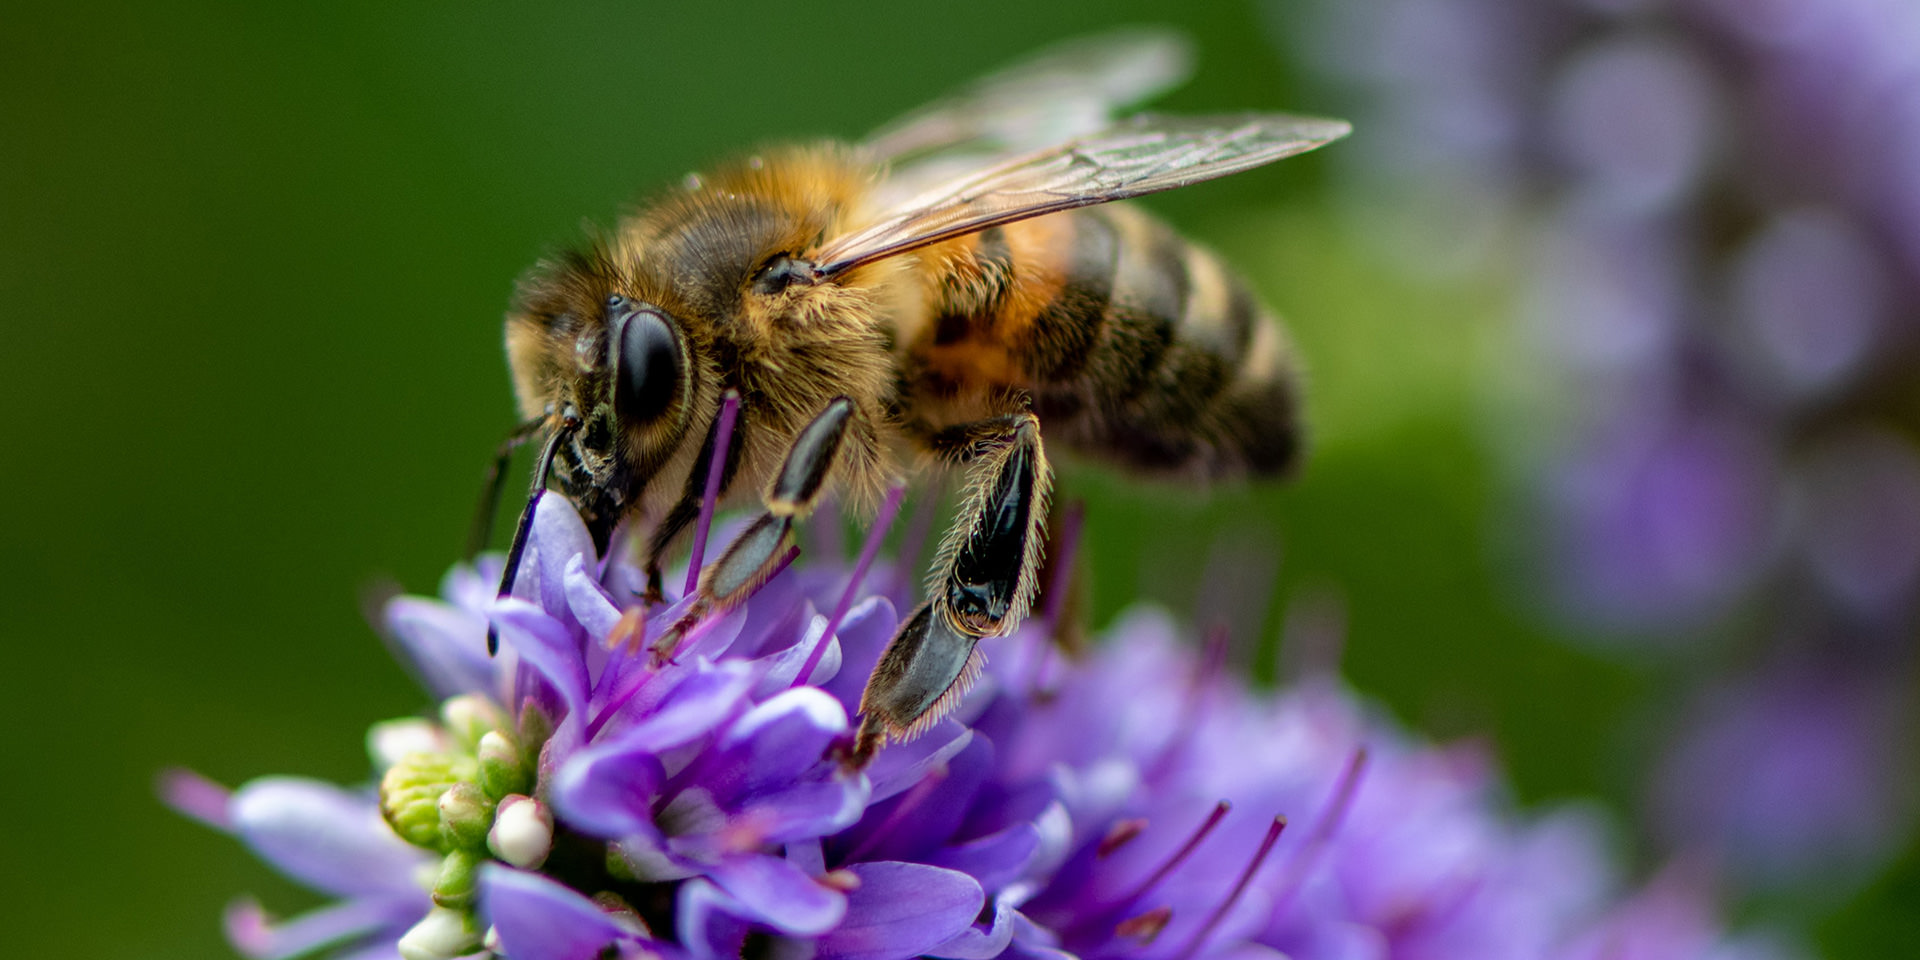 Monokulturen und massenhafter Pestizideinsatz 
bedrohen Bienen und andere Insekten.